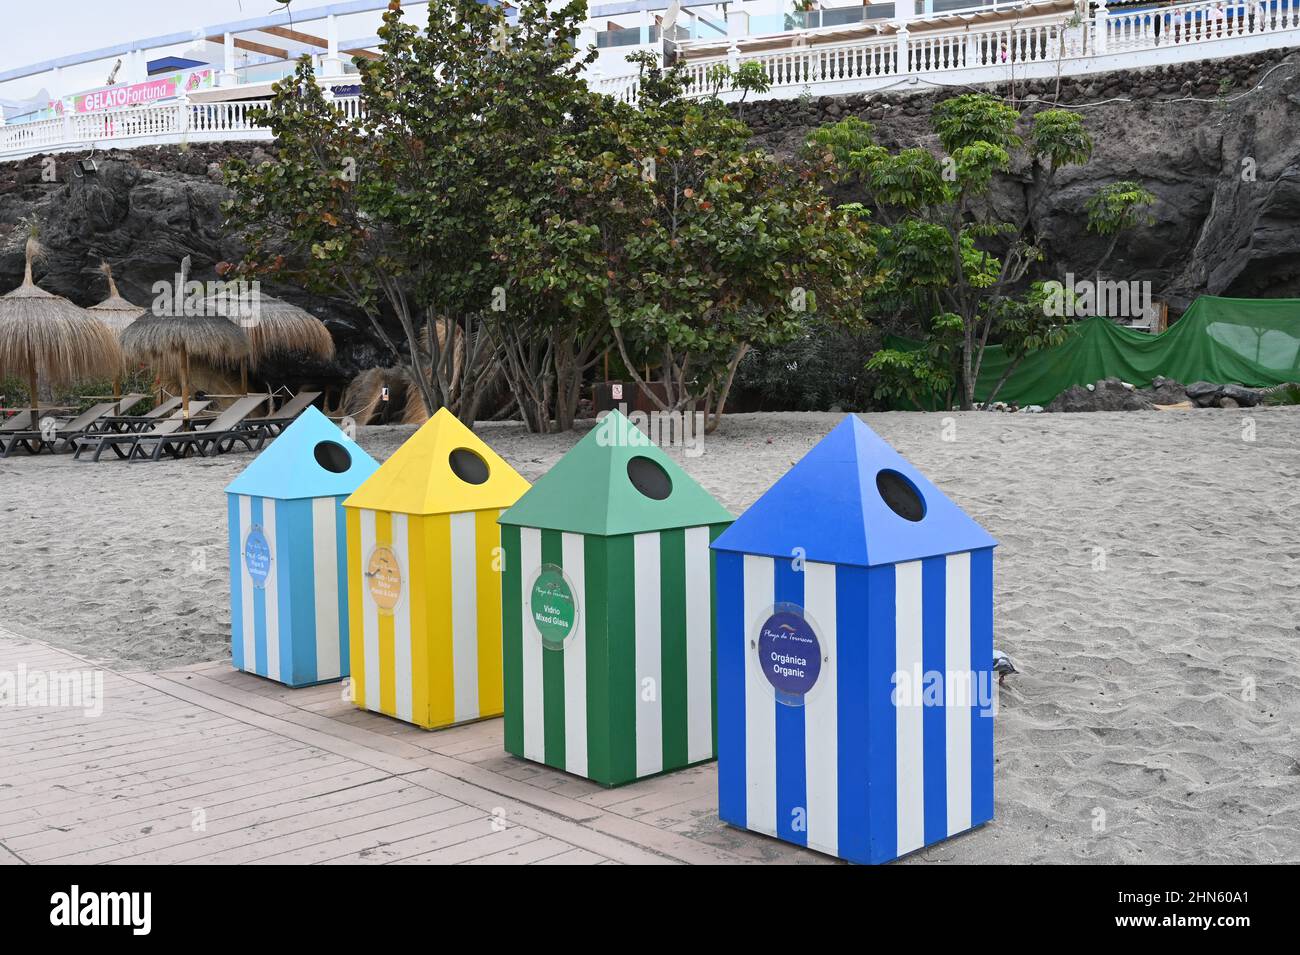 Una serie di bidoni di riciclaggio su una spiaggia a Costa Adeje, Tenerife, che assomigliano a tende nelle tonalità del blu, giallo e verde Foto Stock